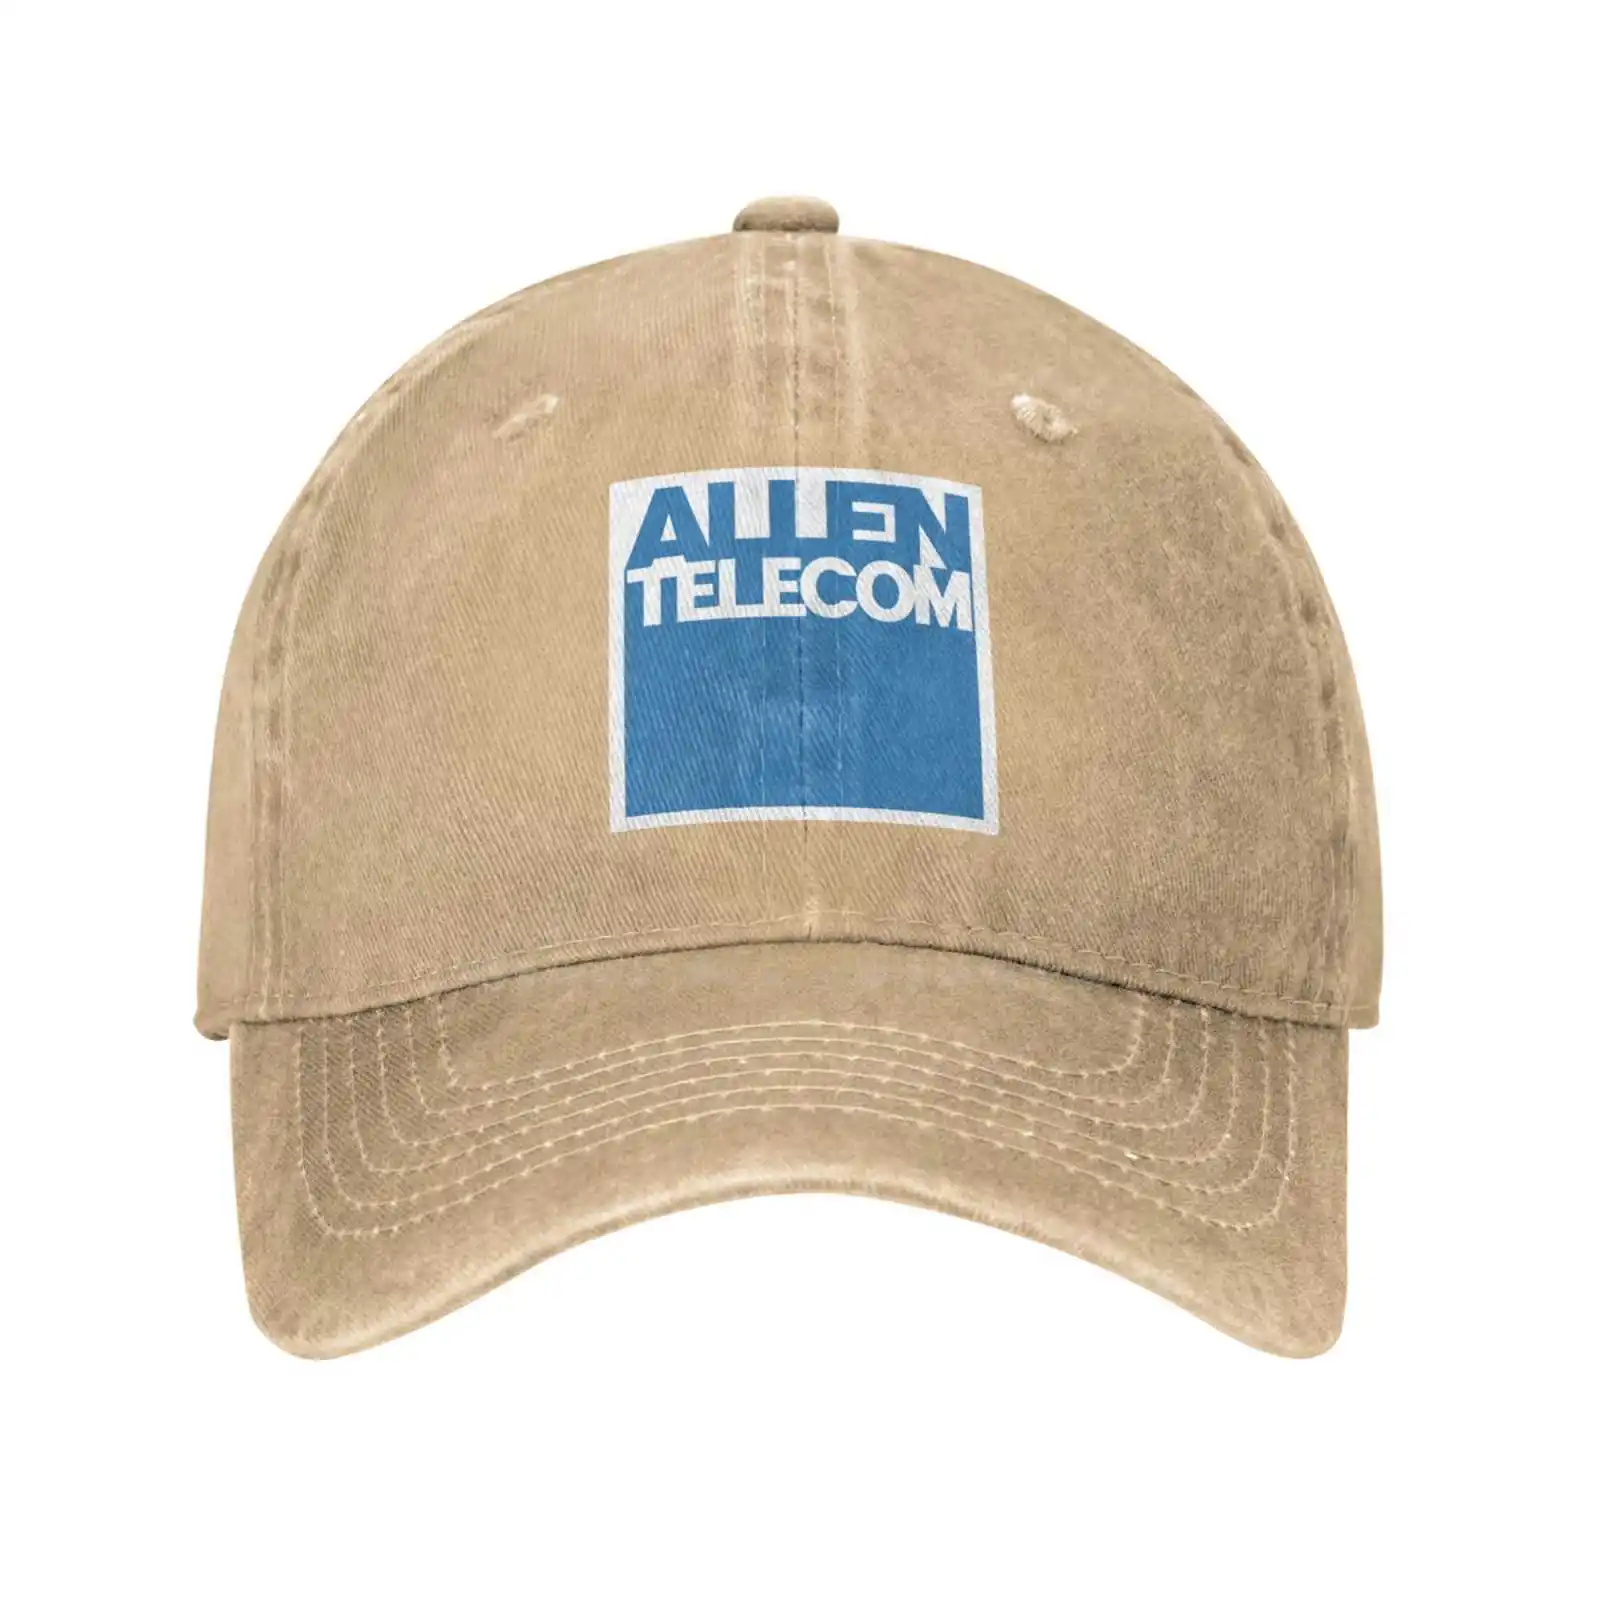 Аллен качественный логотип Телеком моды джинсовая шапка вязаная шляпа бейсболка 3